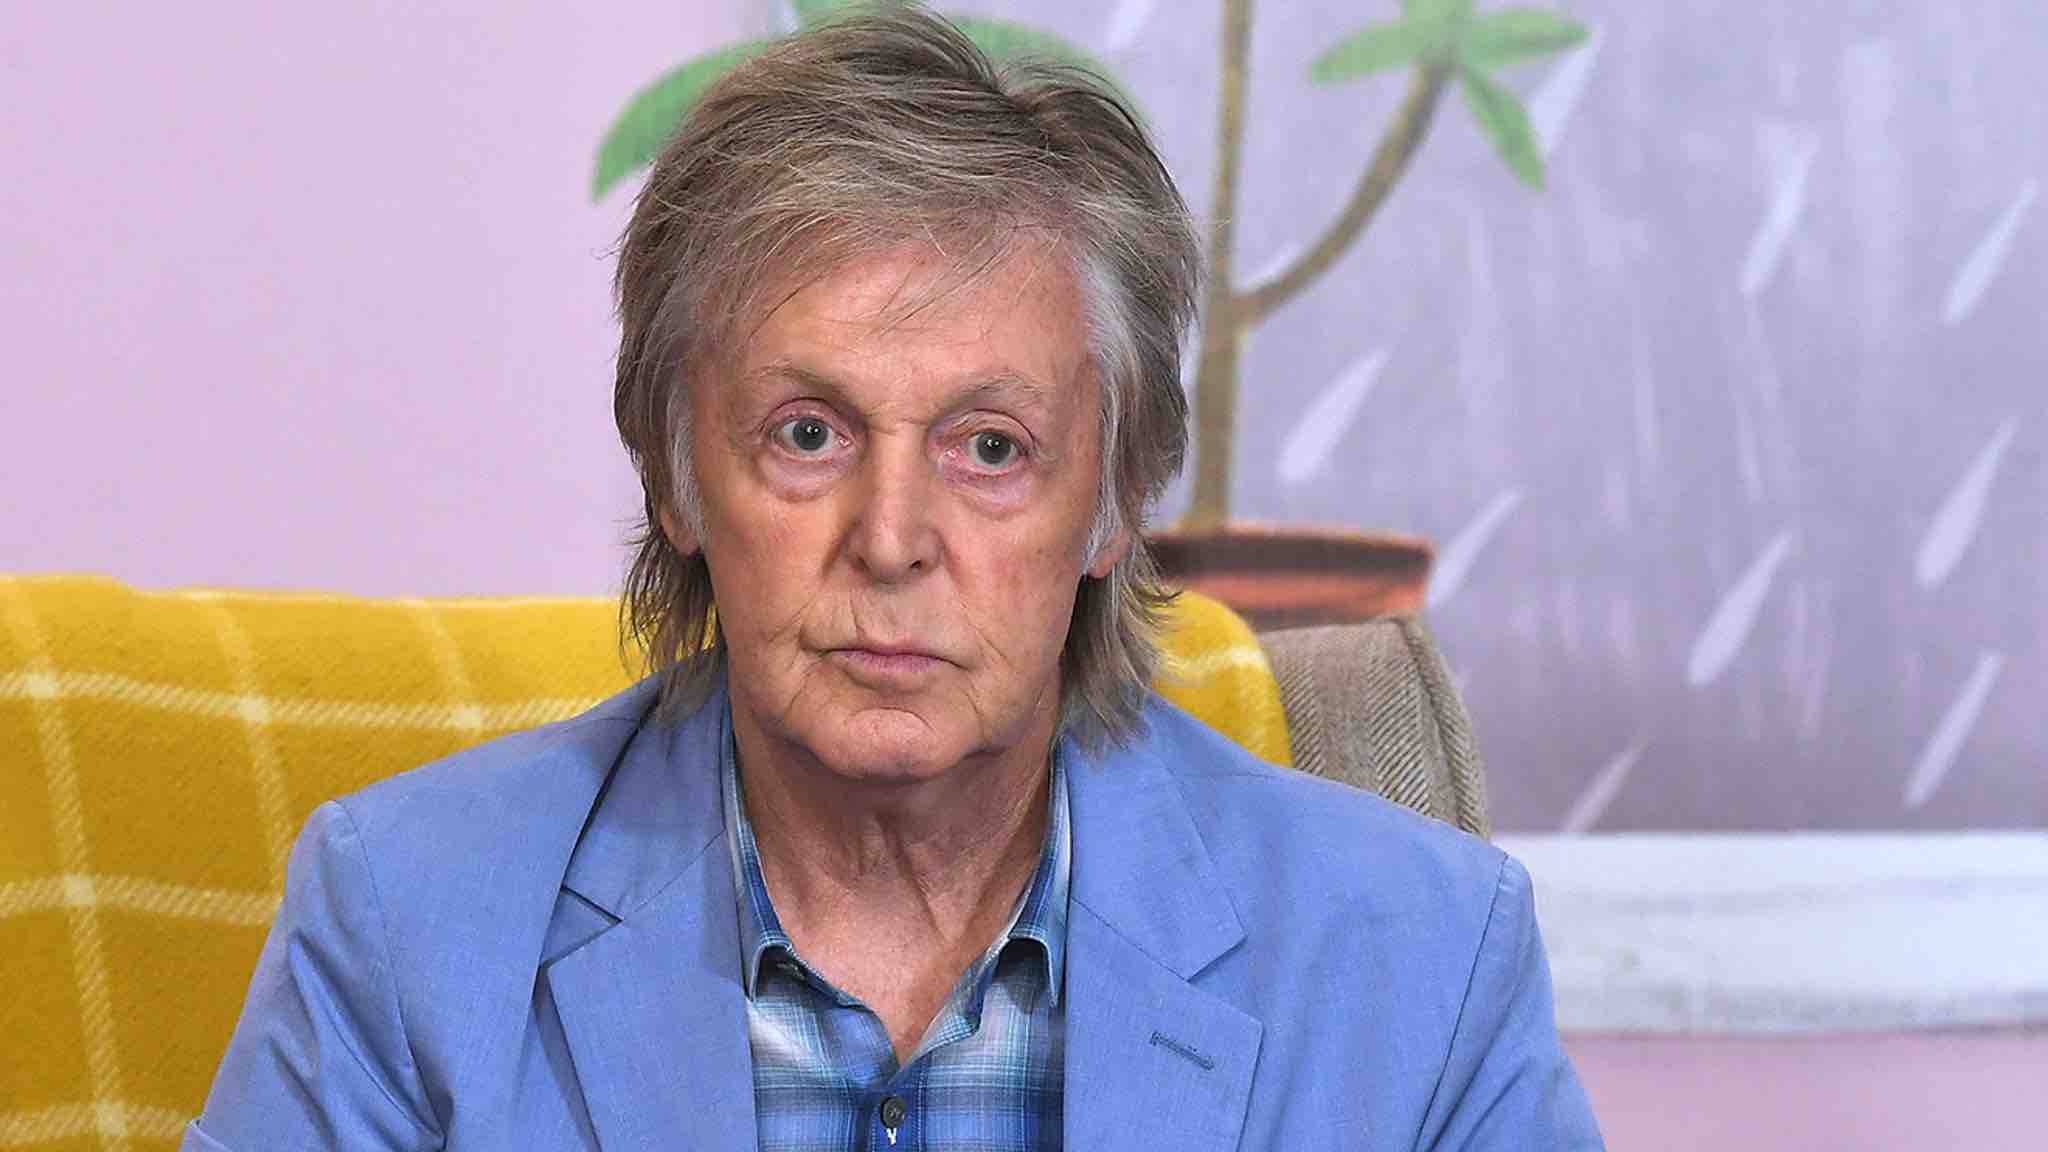 Paul McCartney Had Drunken Meltdown After Breakup